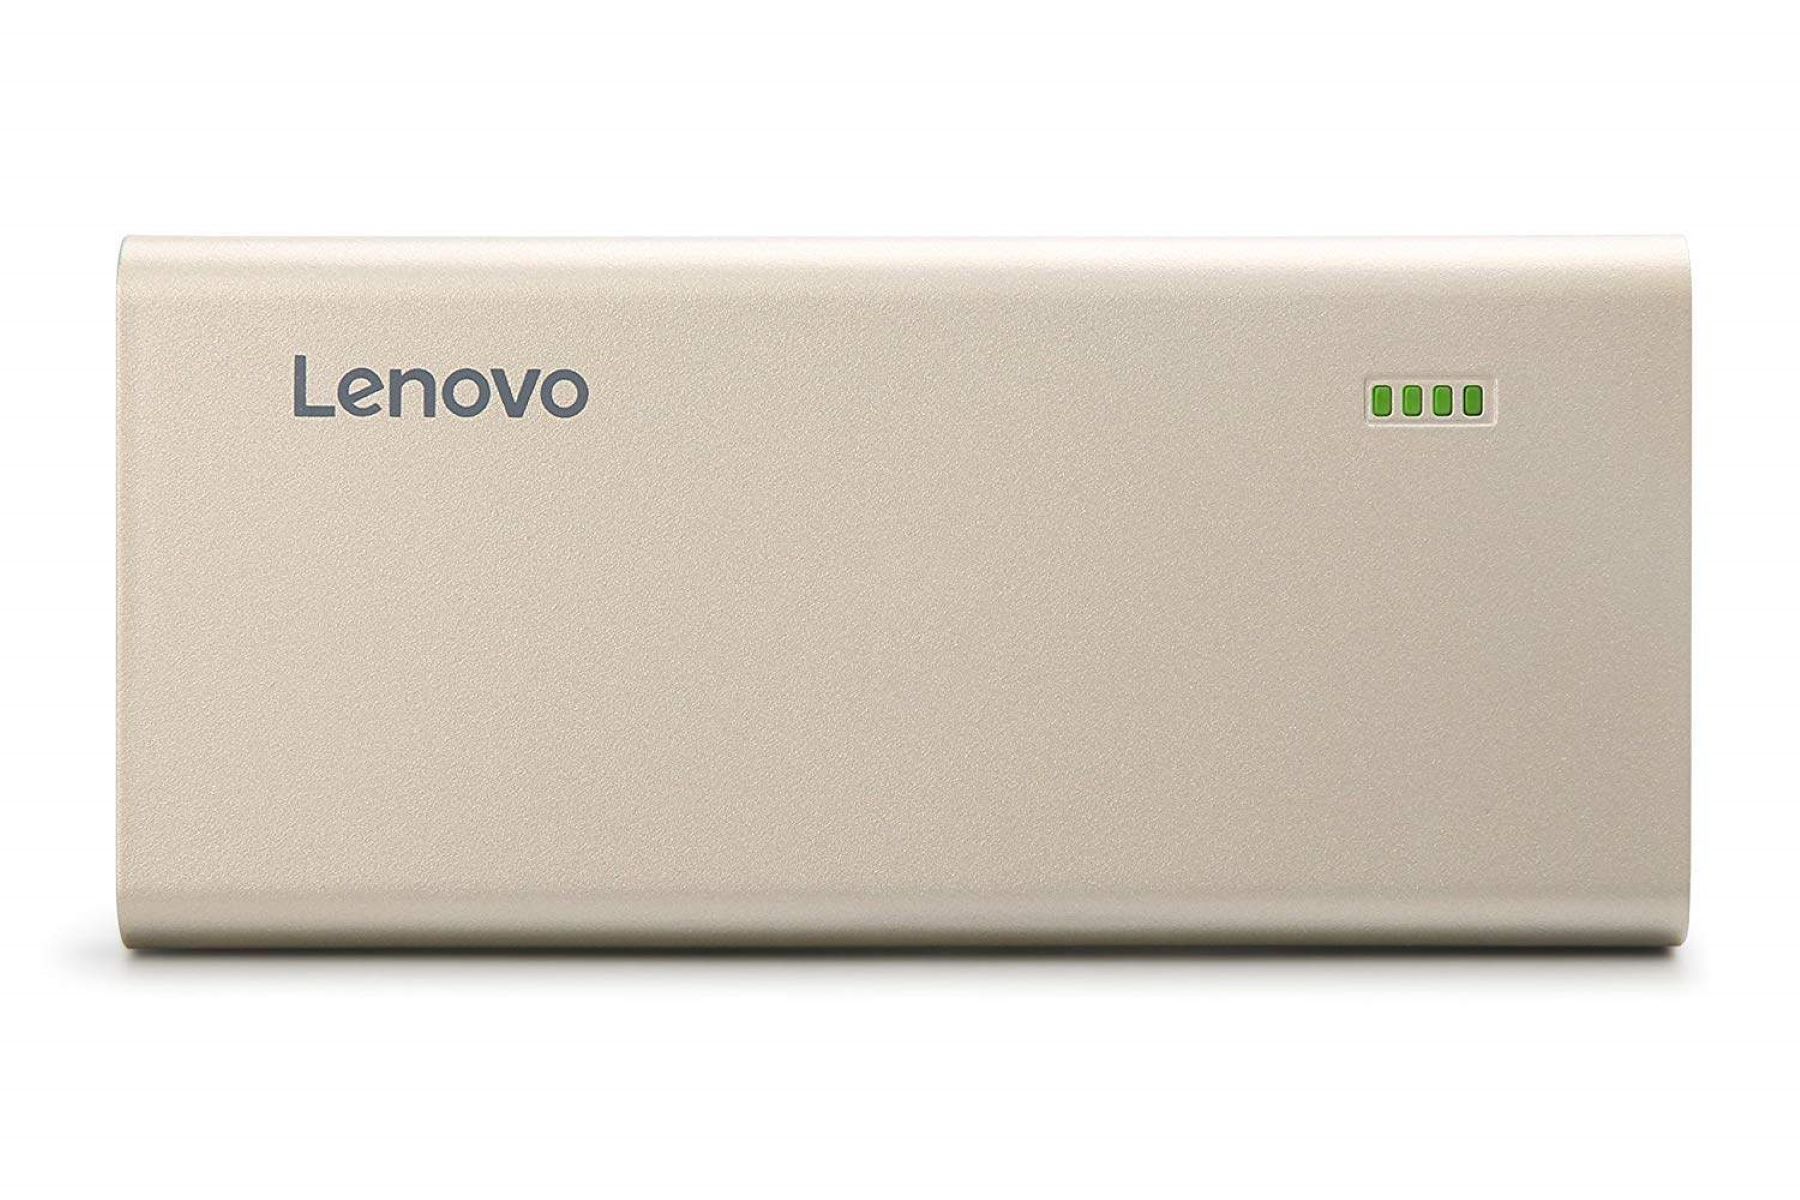 8 Best Lenovo Power Bank For 2023